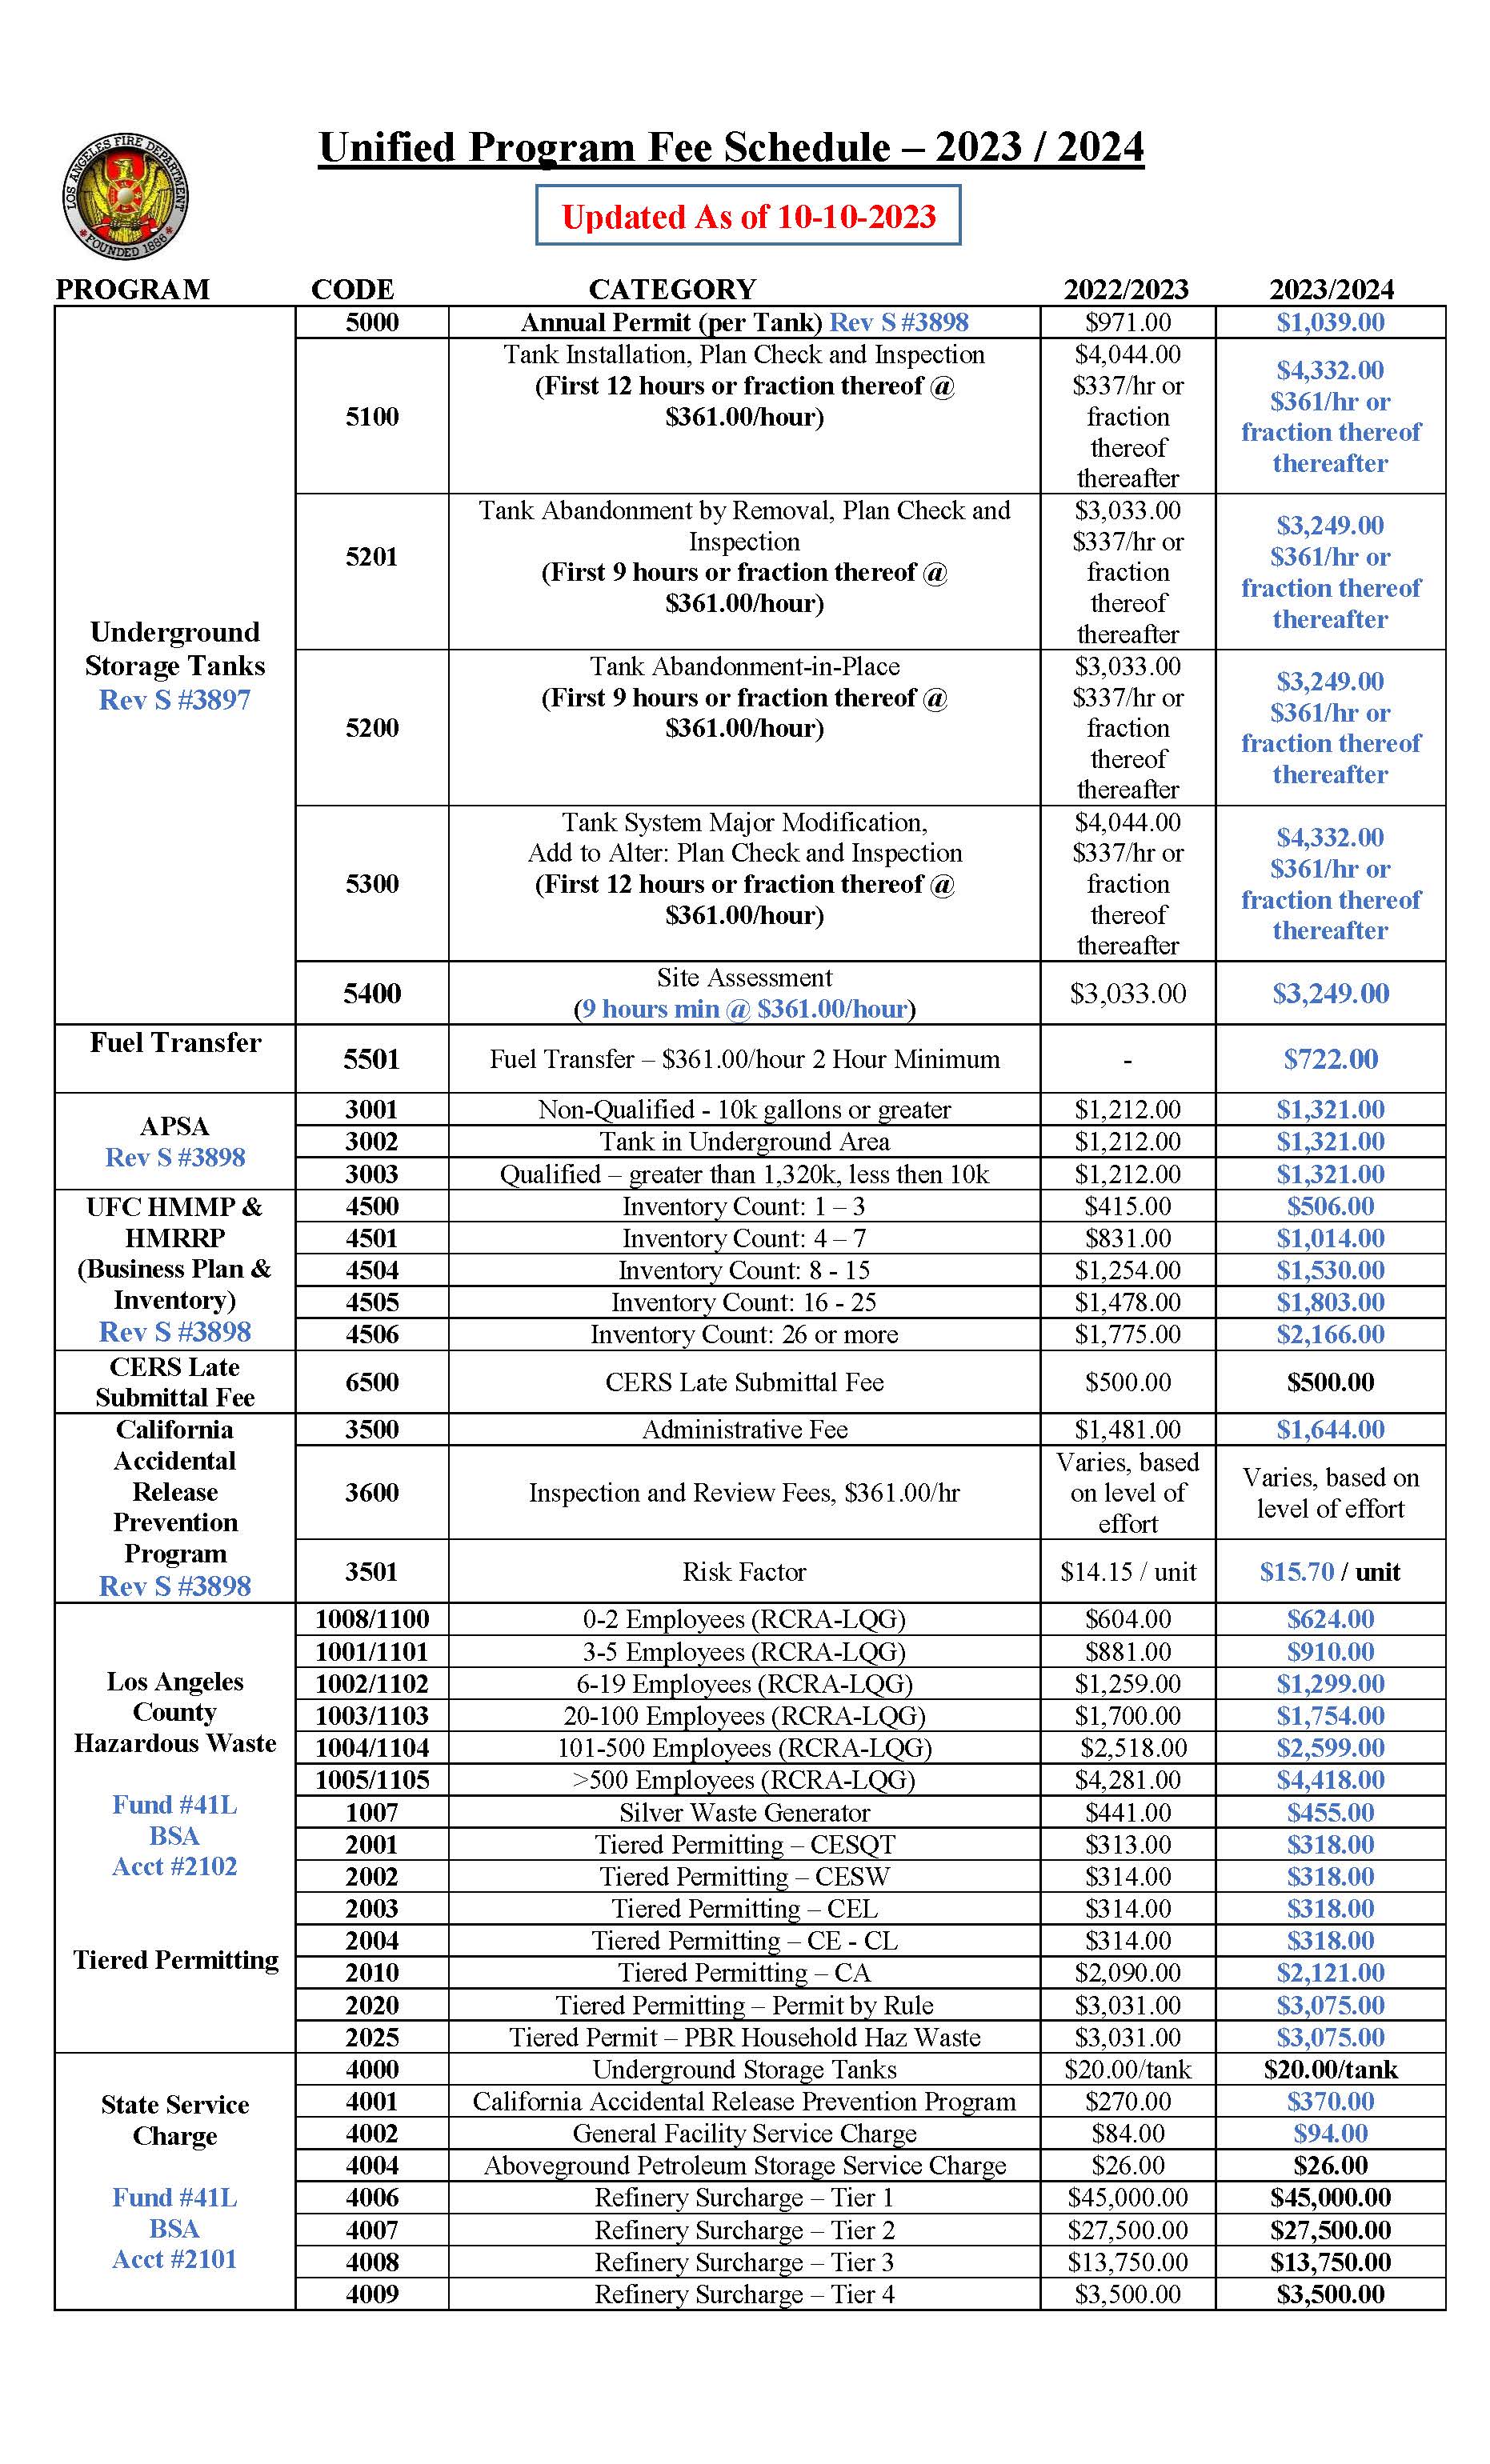 LAFD CUPA Fee Schedule 2023/2024